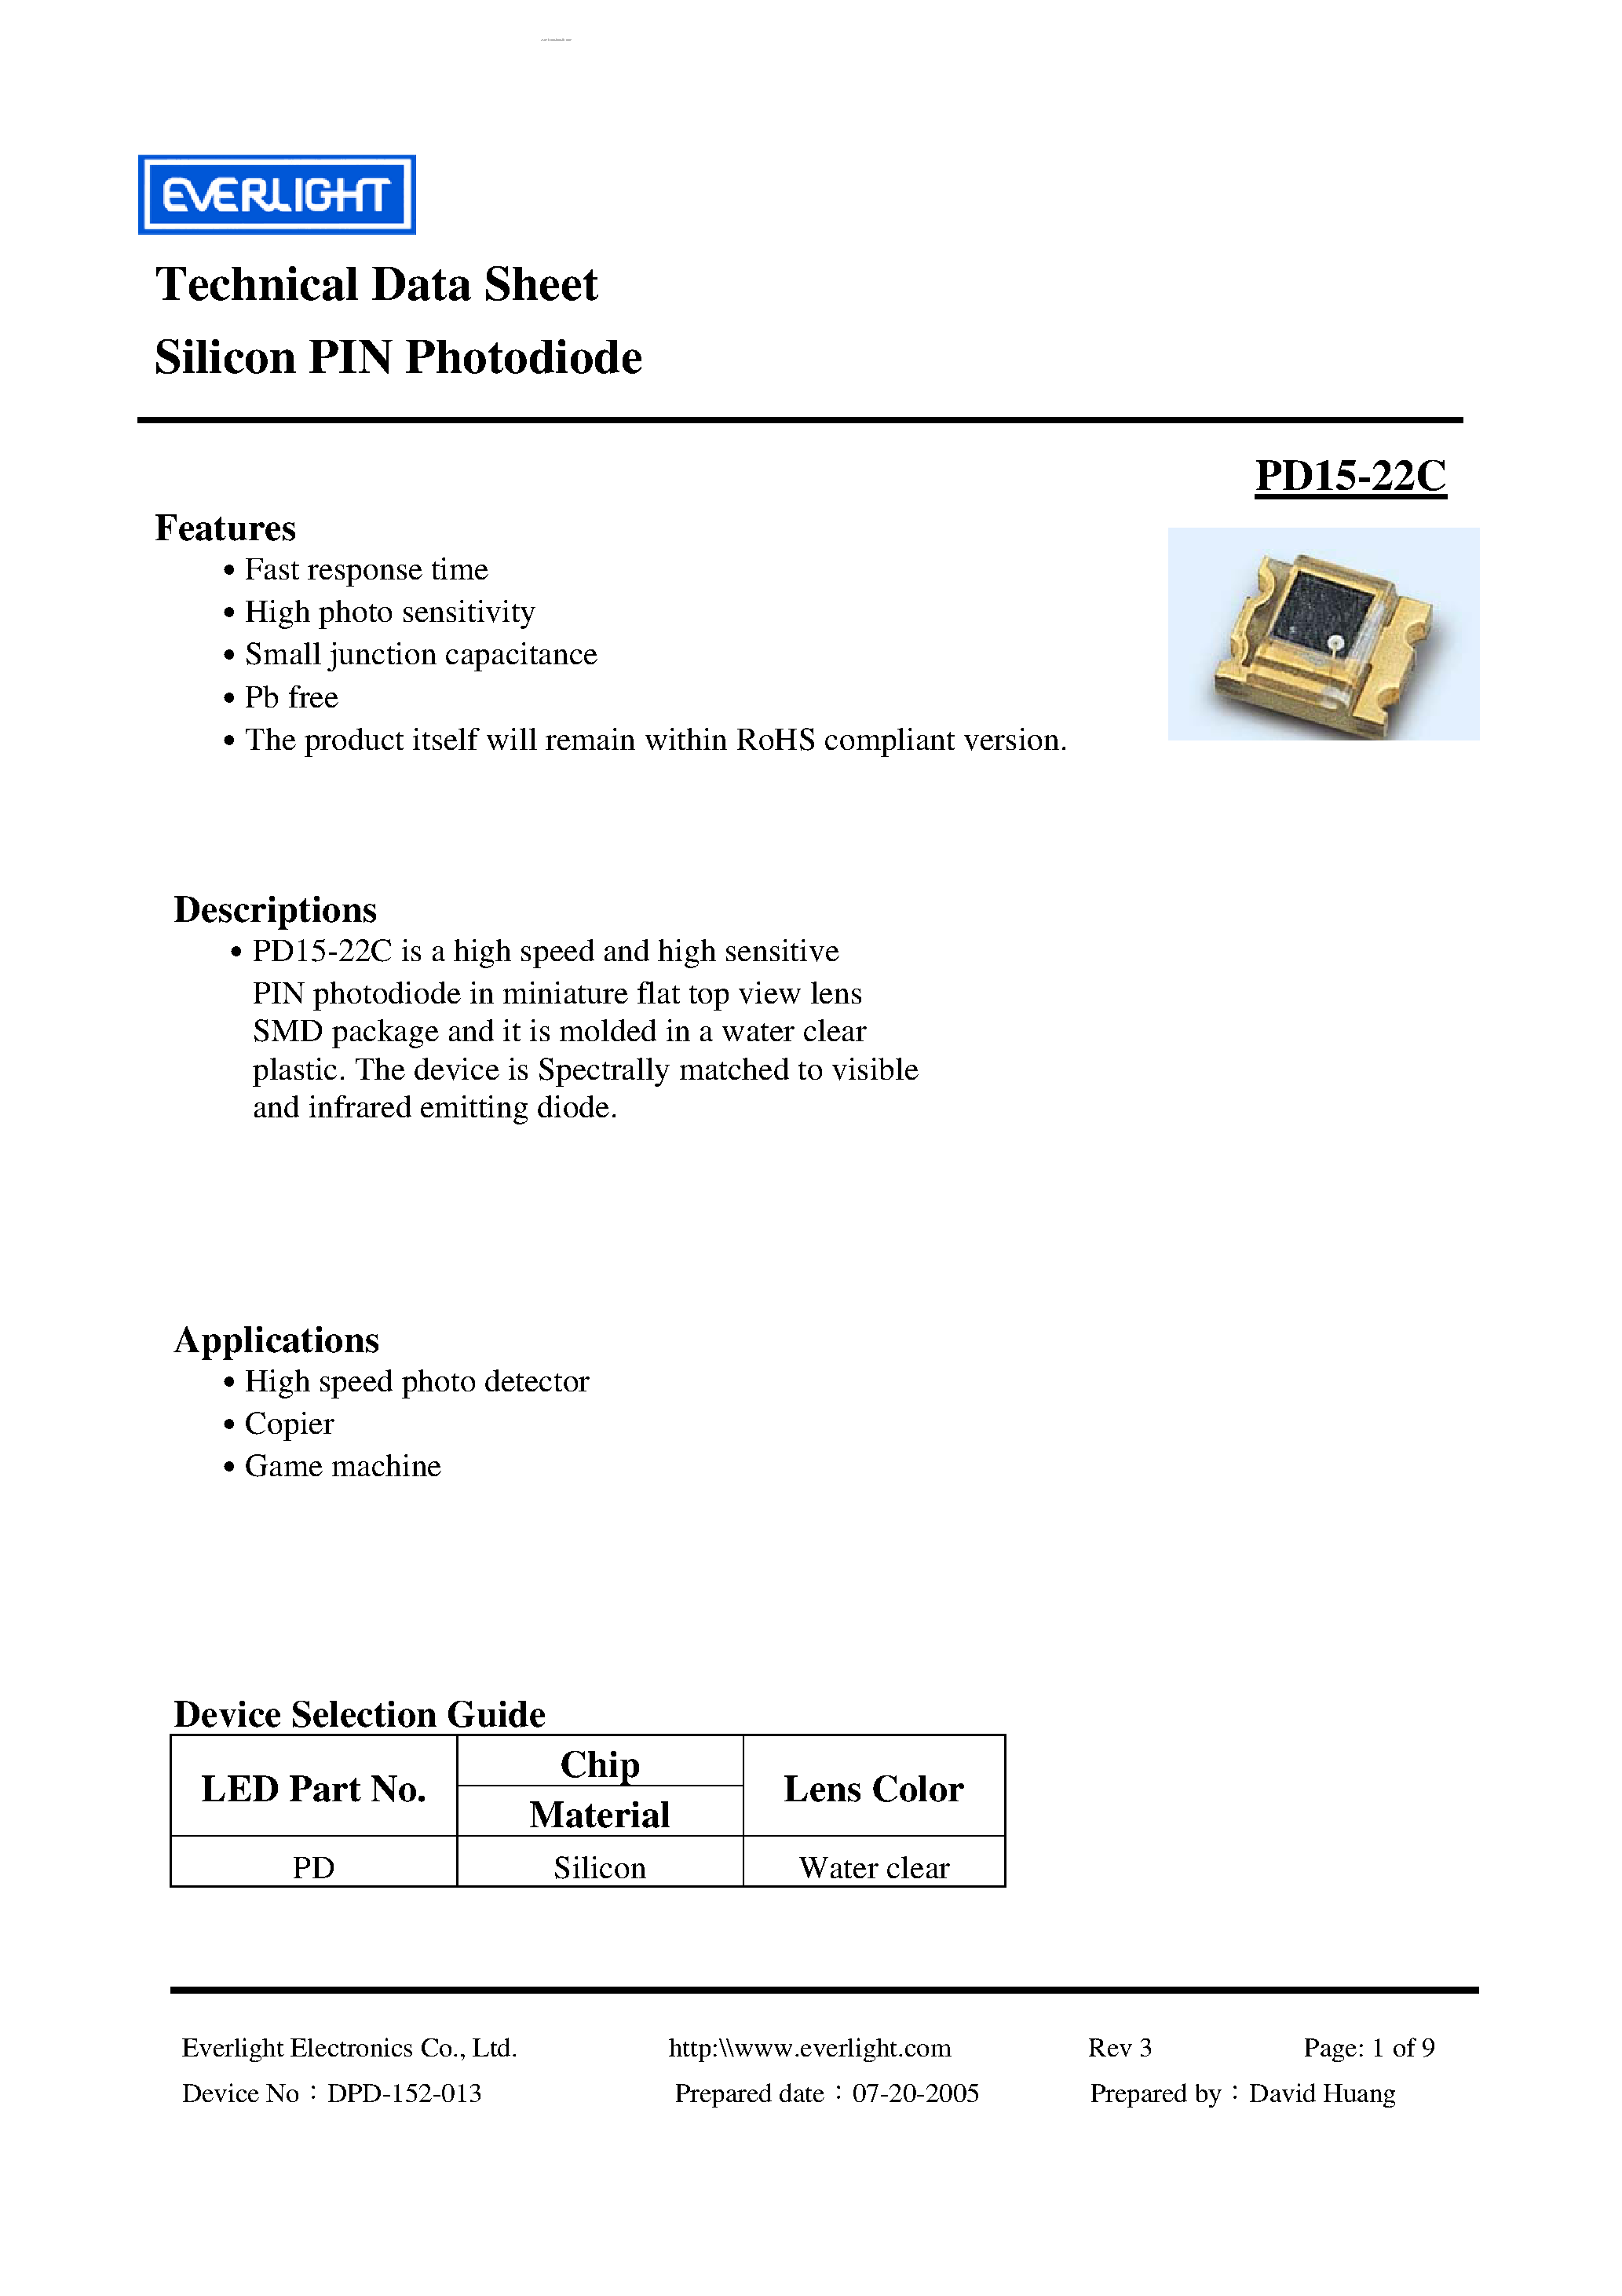 Даташит PD15-22C - Silicon PIN Photodiode страница 1